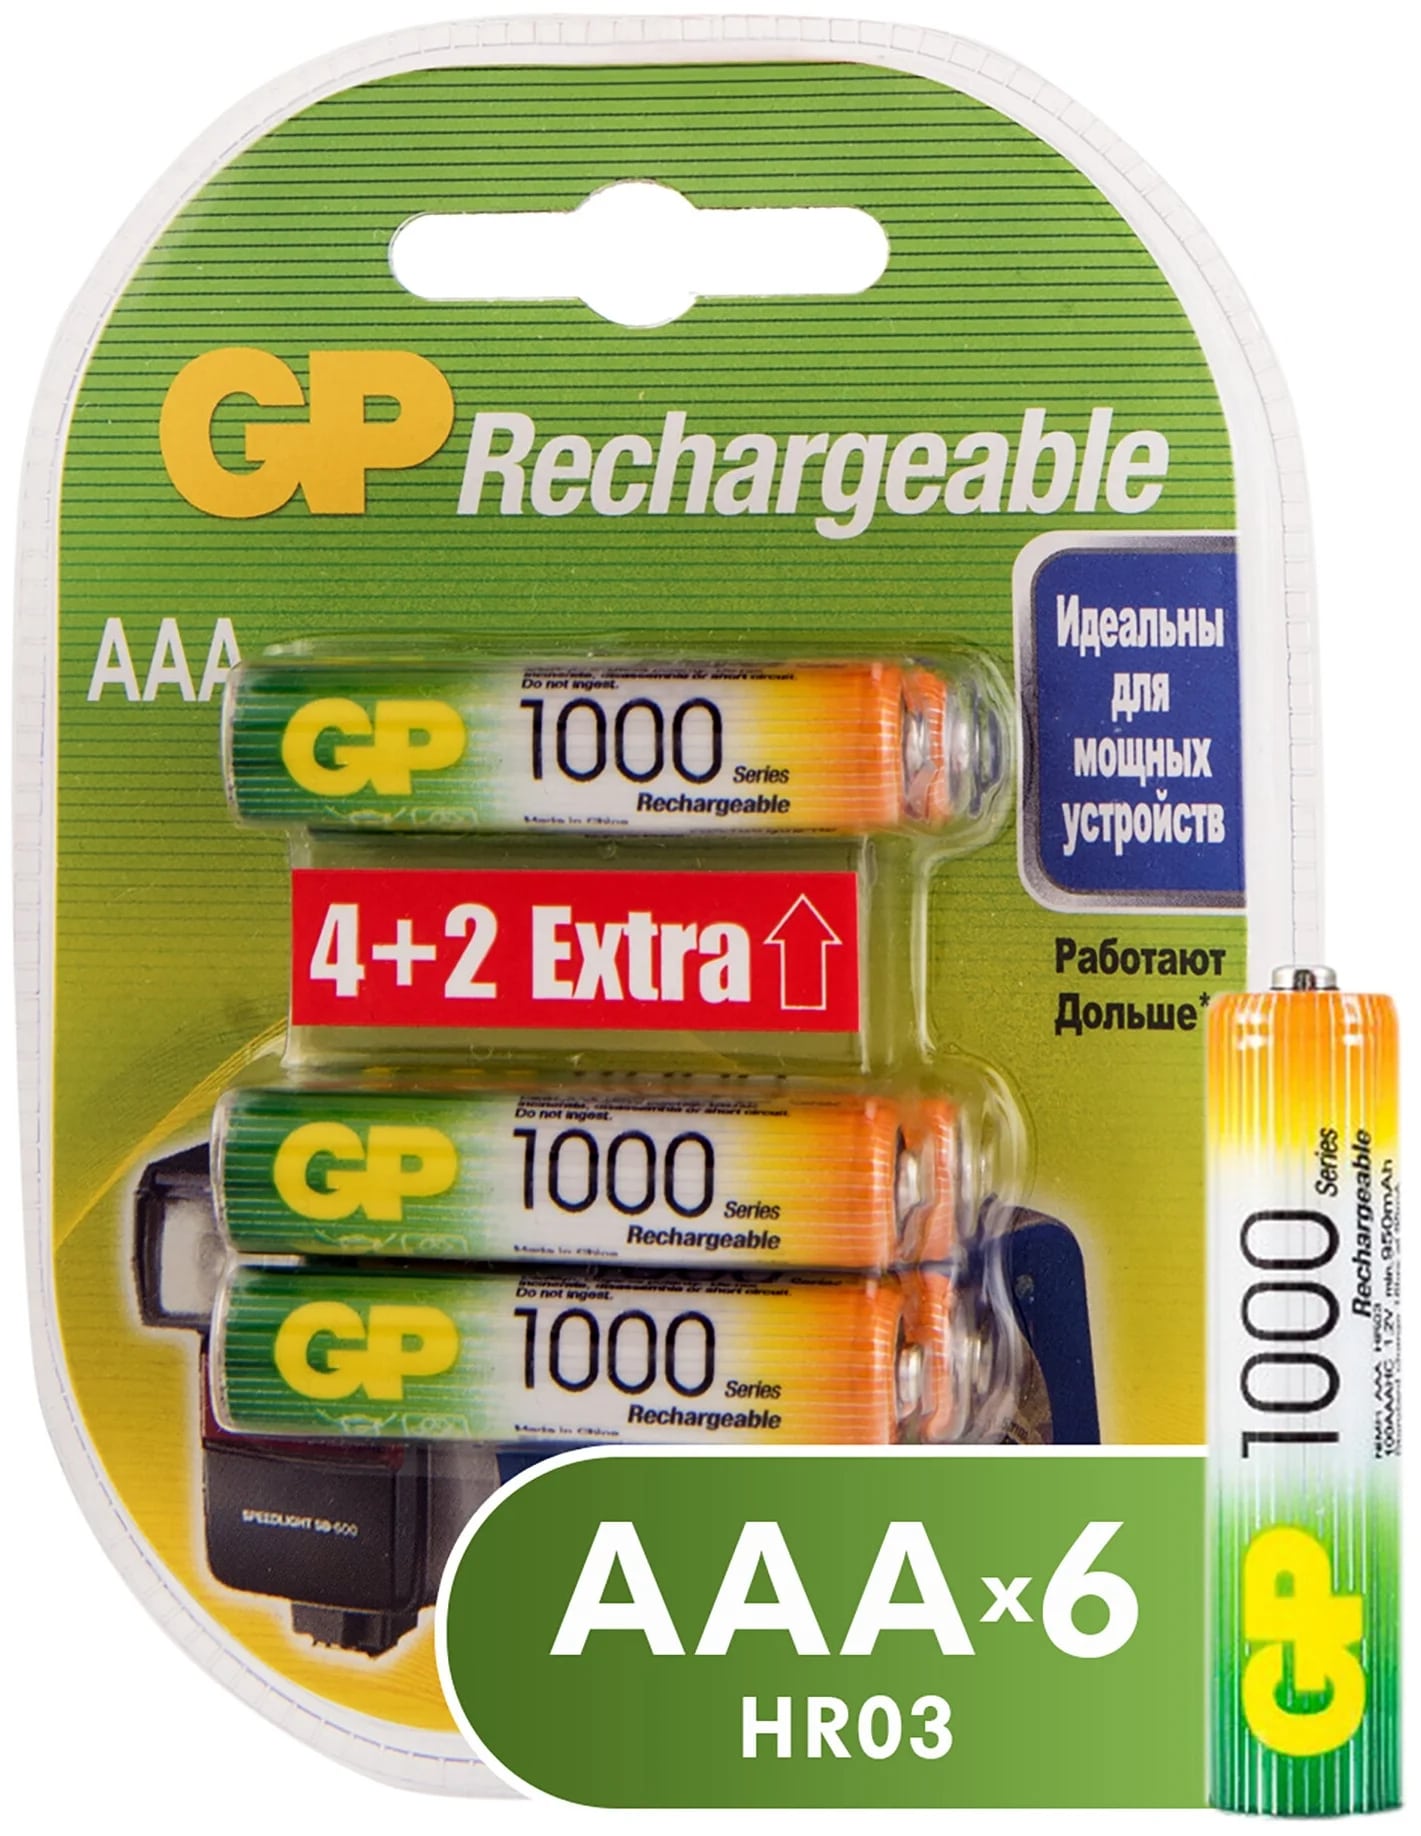 Аккумуляторы GP Batteries перезаряжаемые, AAA, 930 мАч, 6 шт перезаряжаемые аккумуляторы gp